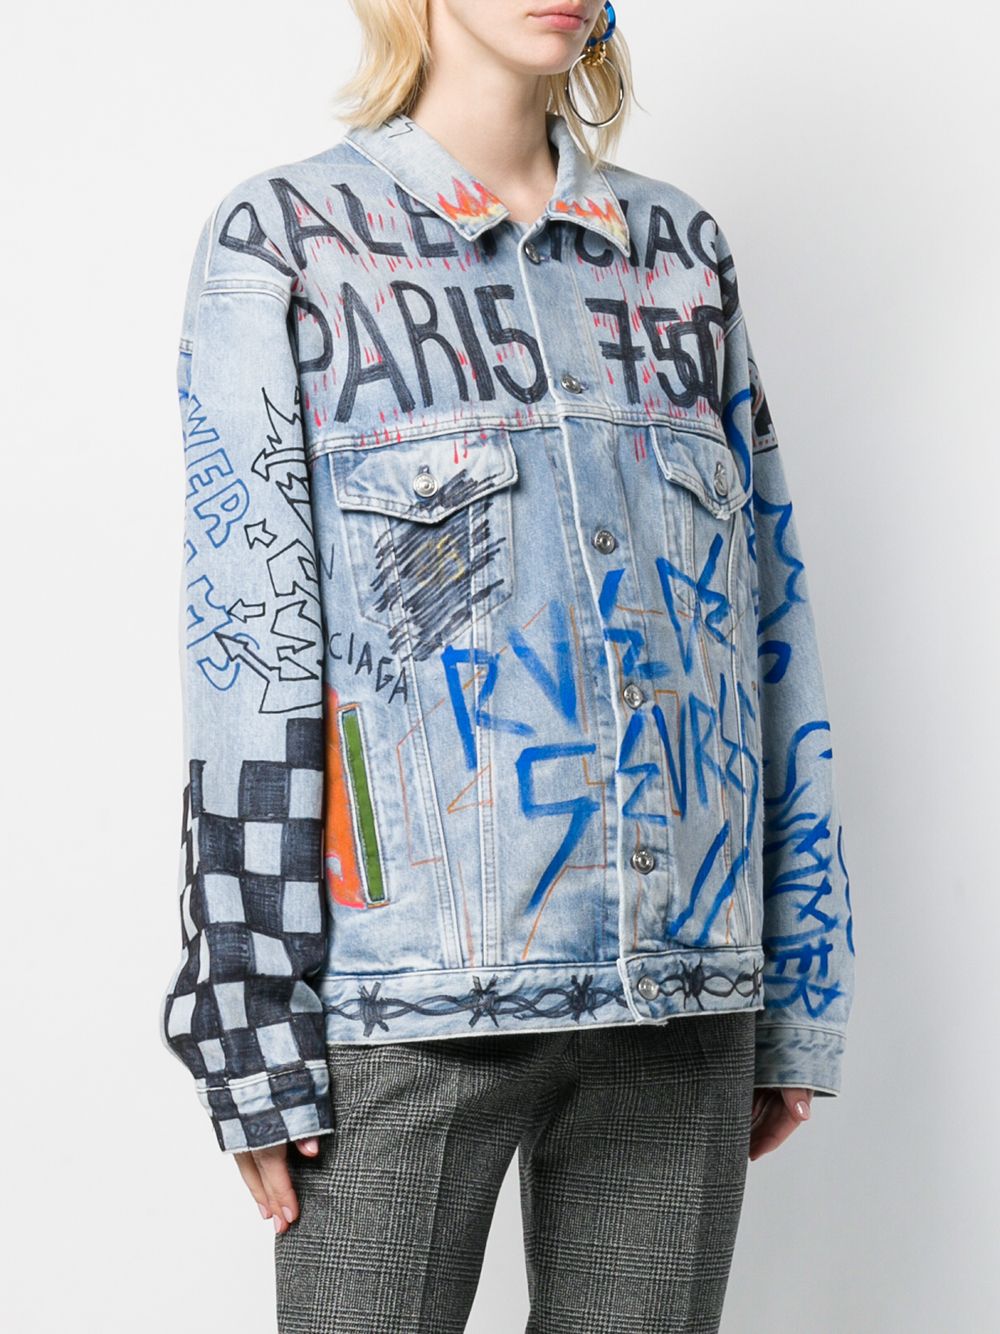 фото Balenciaga джинсовая куртка оверсайз с принтом граффити